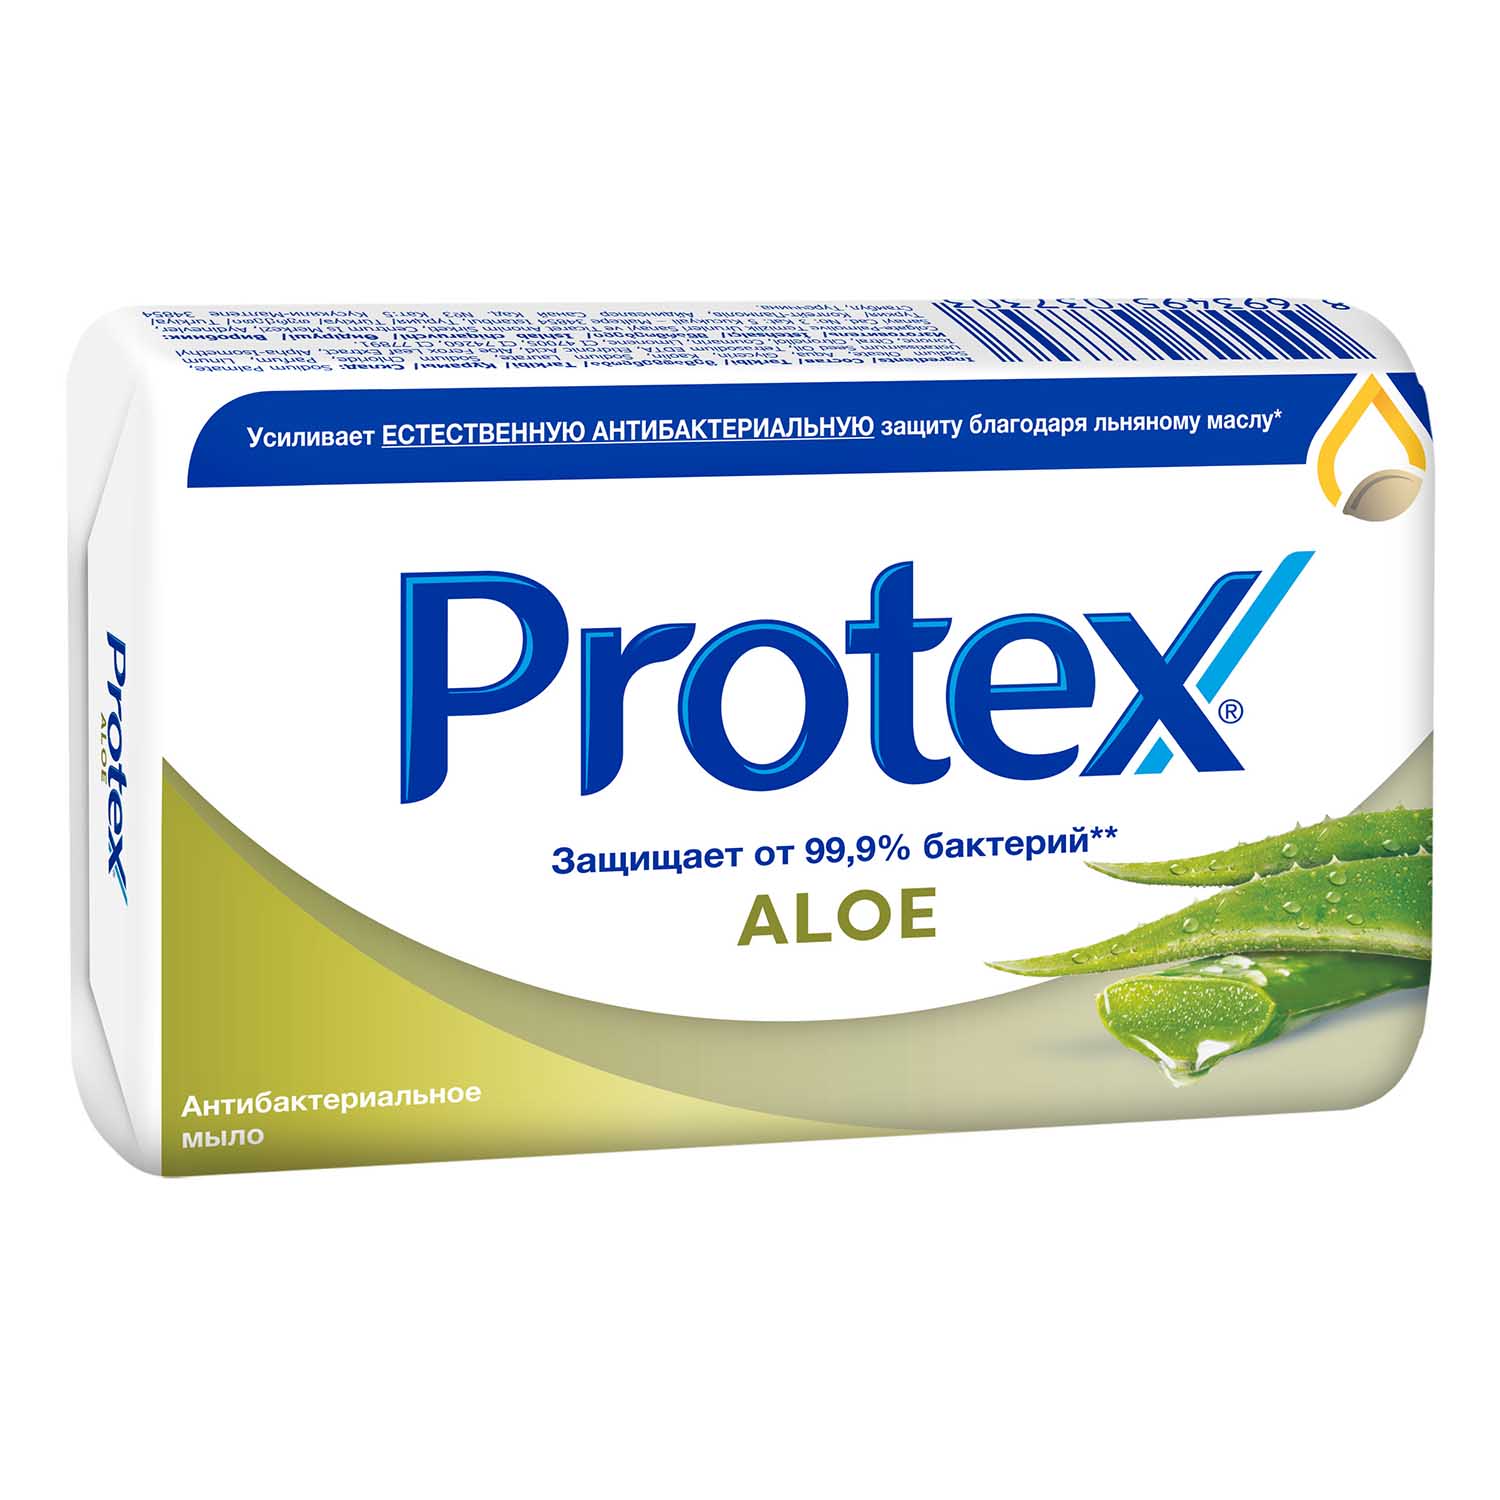 Мыло туалетное Protex Aloe антибактериальное, 90 г мыло protex aloe антибактериальное 90 г